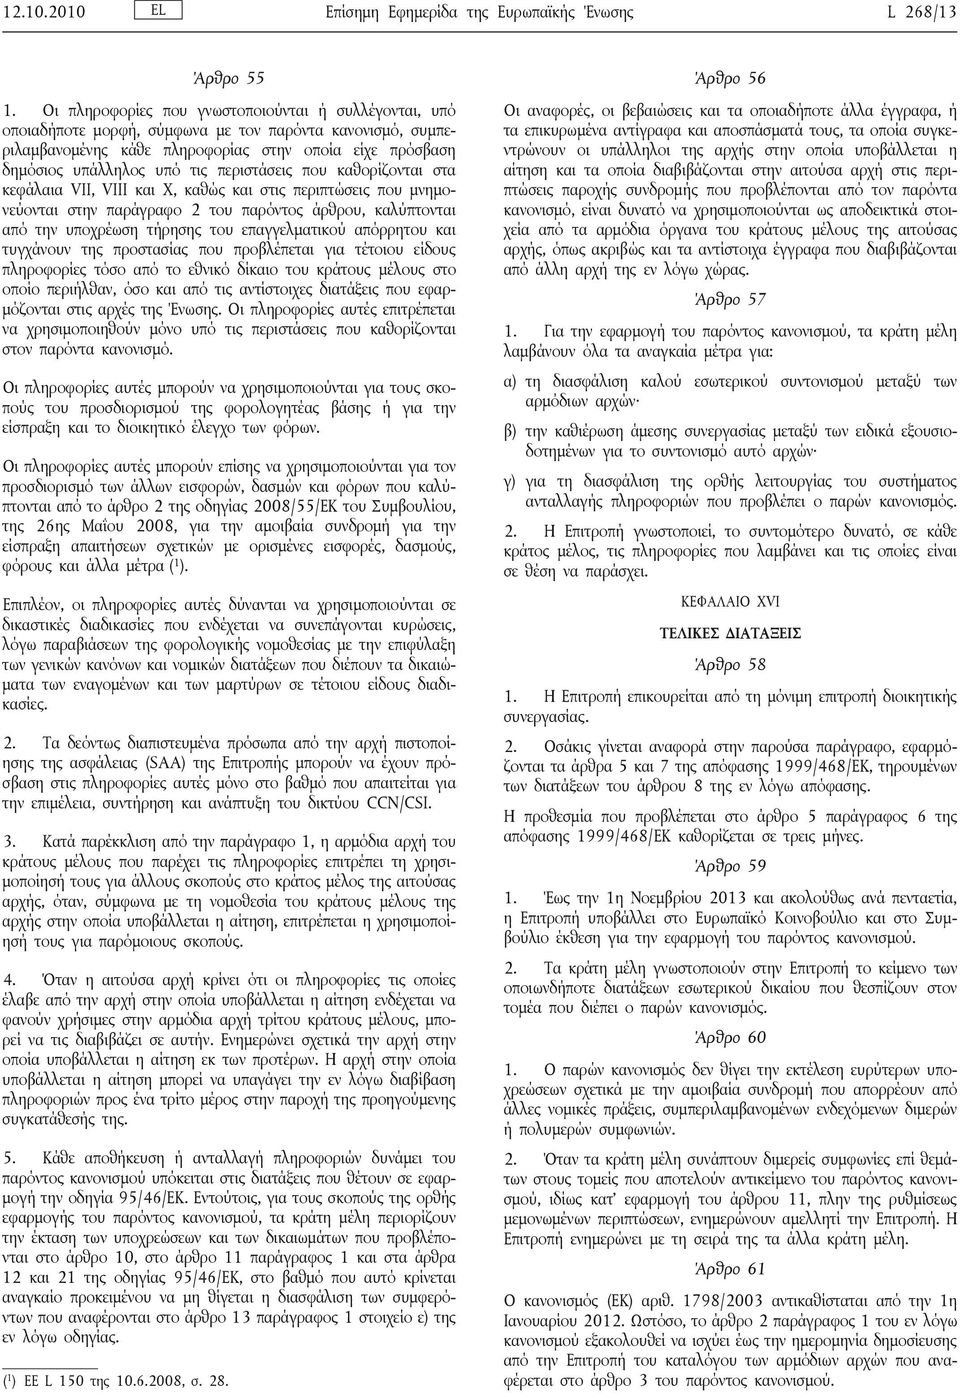 περιστάσεις που καθορίζονται στα κεφάλαια VII, VIII και X, καθώς και στις περιπτώσεις που μνημονεύονται στην παράγραφο 2 του παρόντος άρθρου, καλύπτονται από την υποχρέωση τήρησης του επαγγελματικού